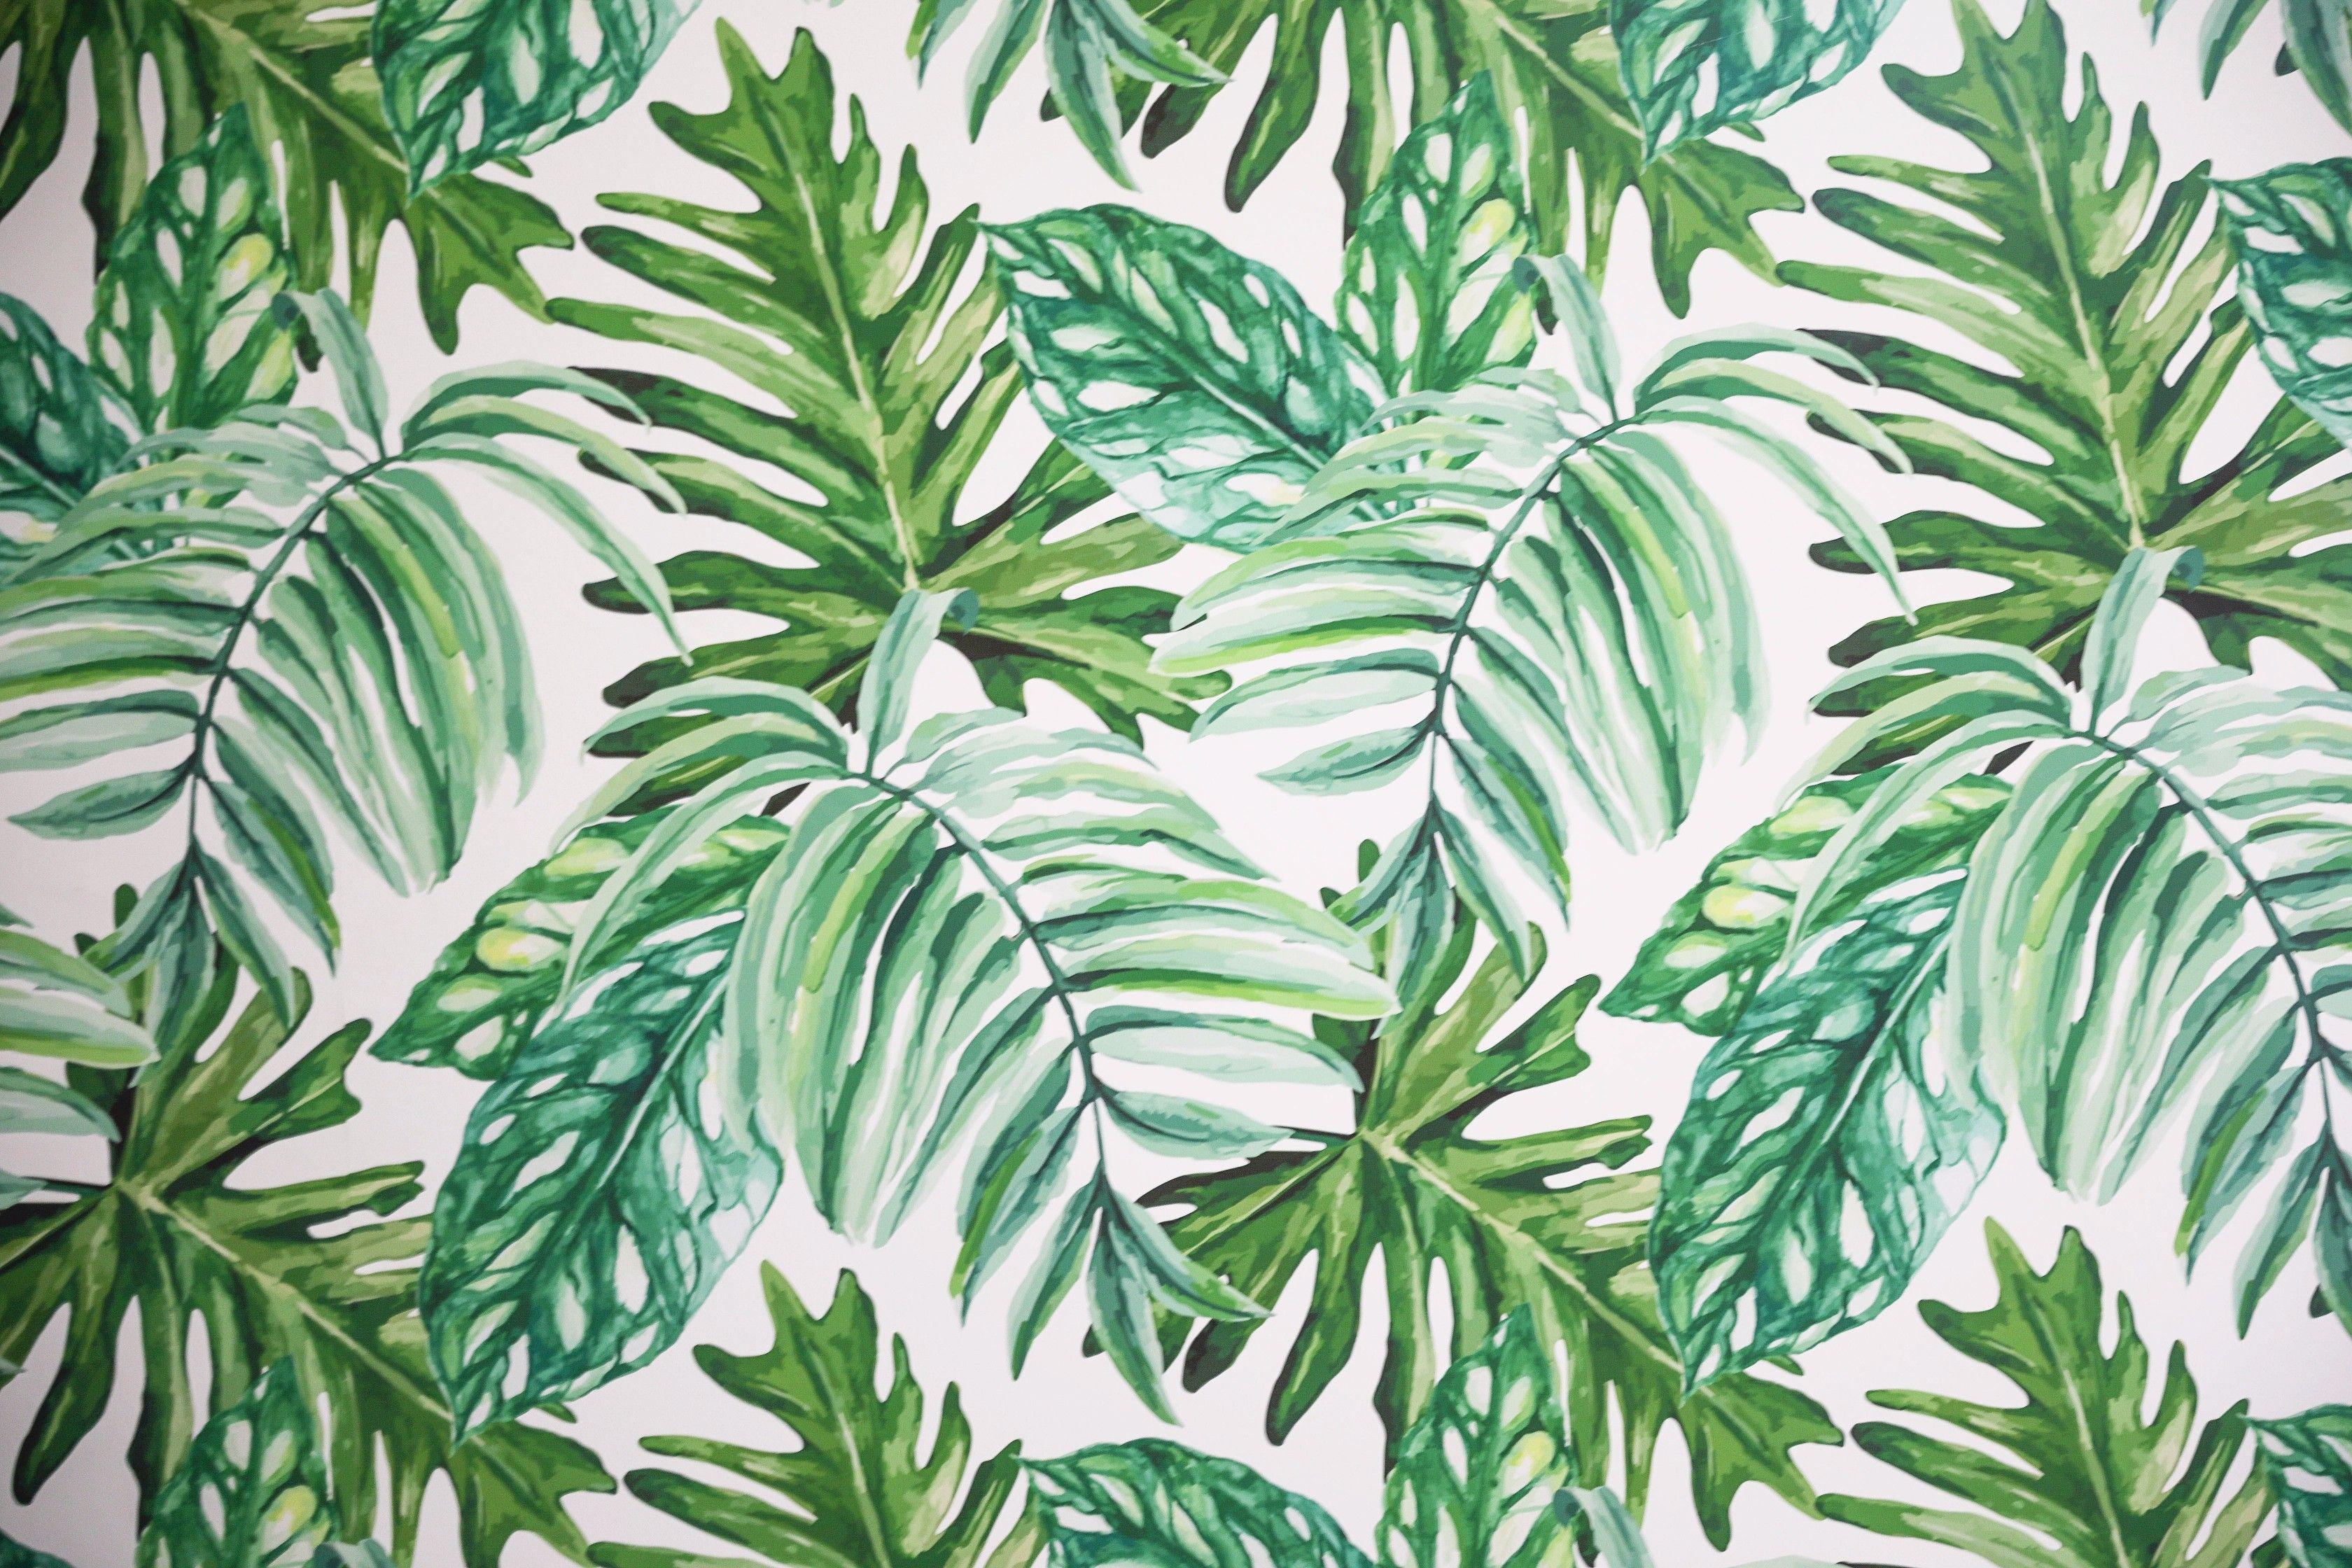 alfresco-palm-leaf-wallpaper-green-home-garden-wallpaper-rolls-sheets